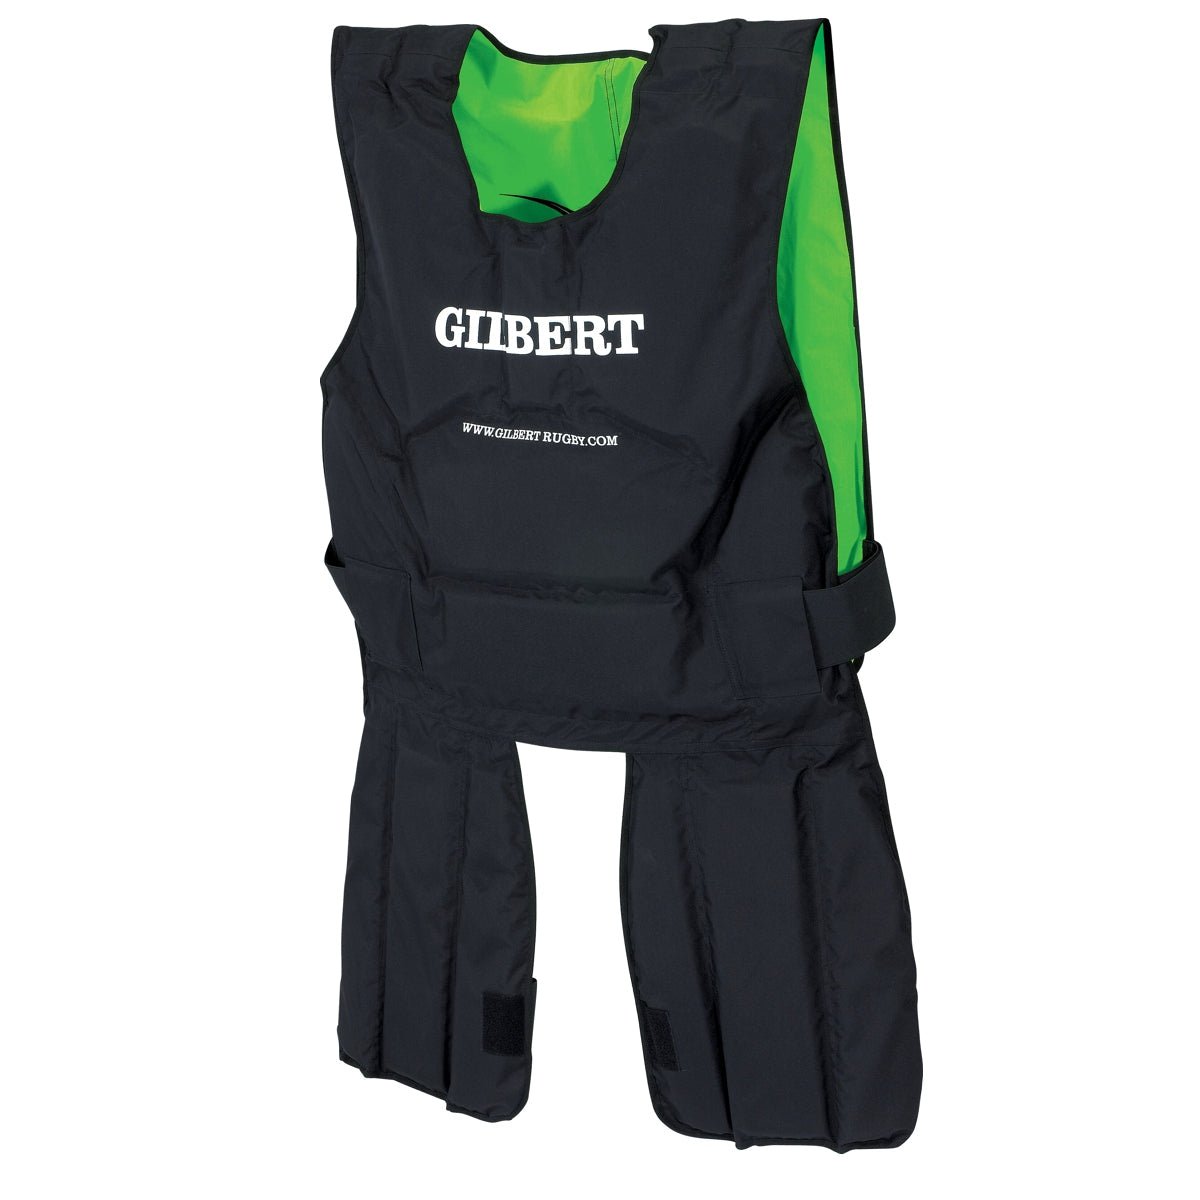 Kopie von Gilbert Rugby Contact Suit - Junior - Kiwisport.de